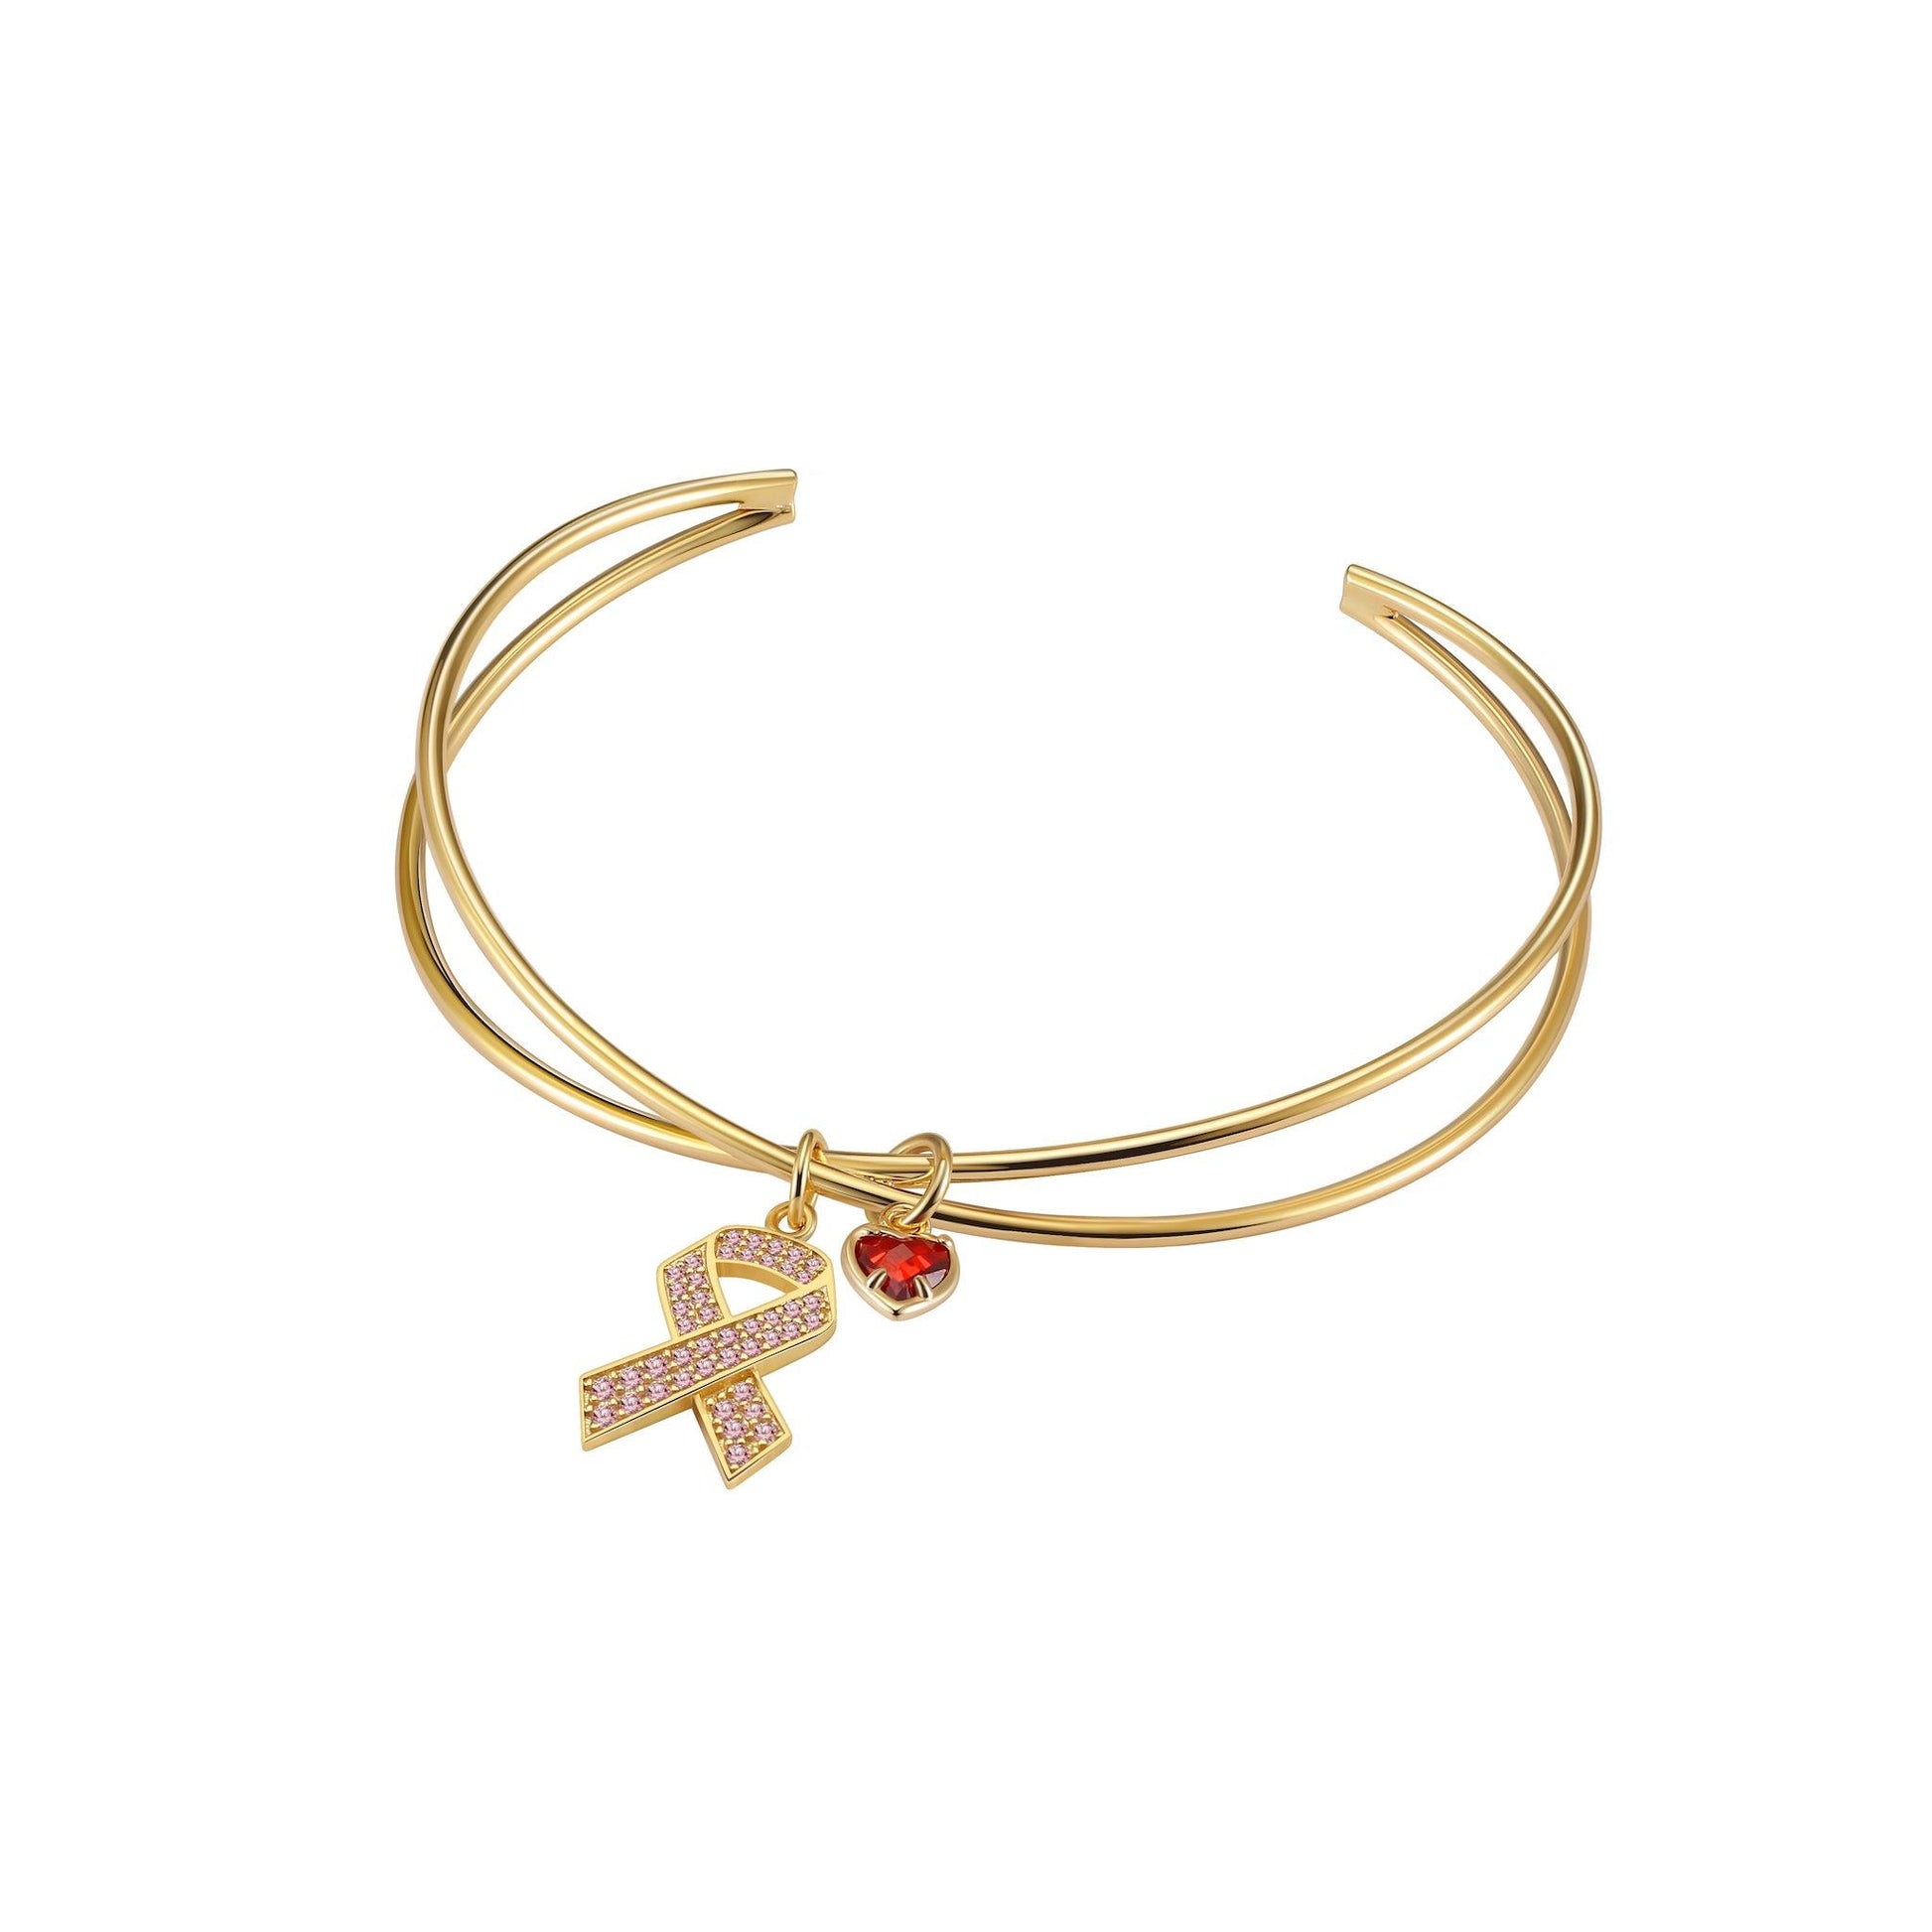 Jacquard Ribbon Bracelet – Peggy Li Creations